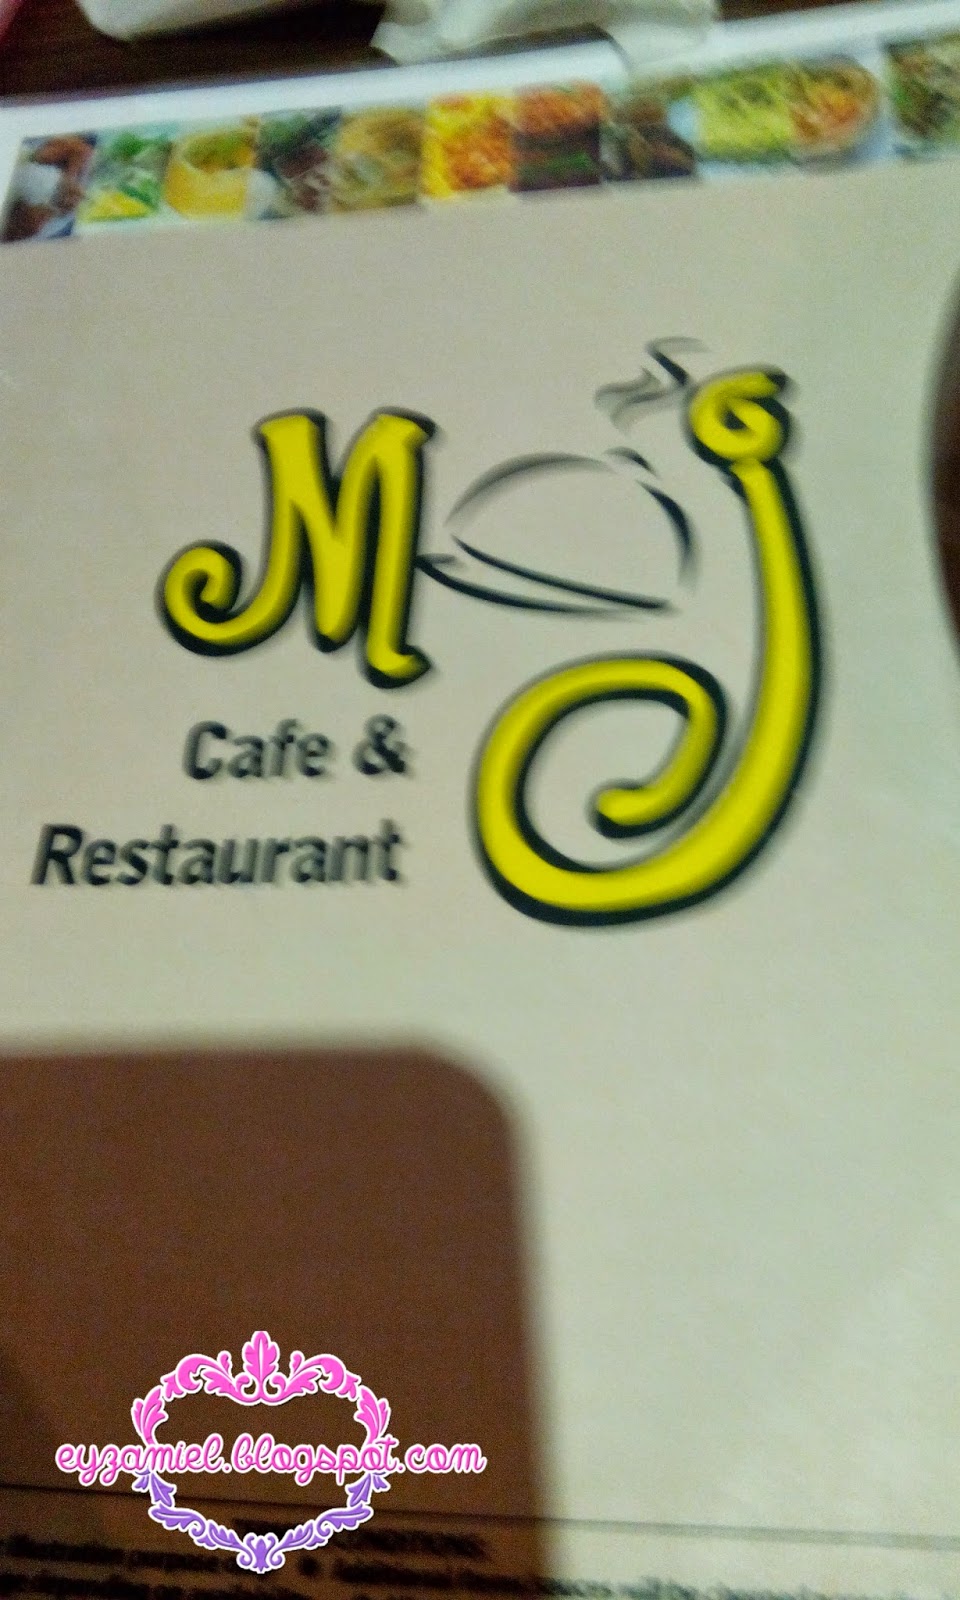 Makan-makan di MJ Cafe & Restaurant, Kenanga